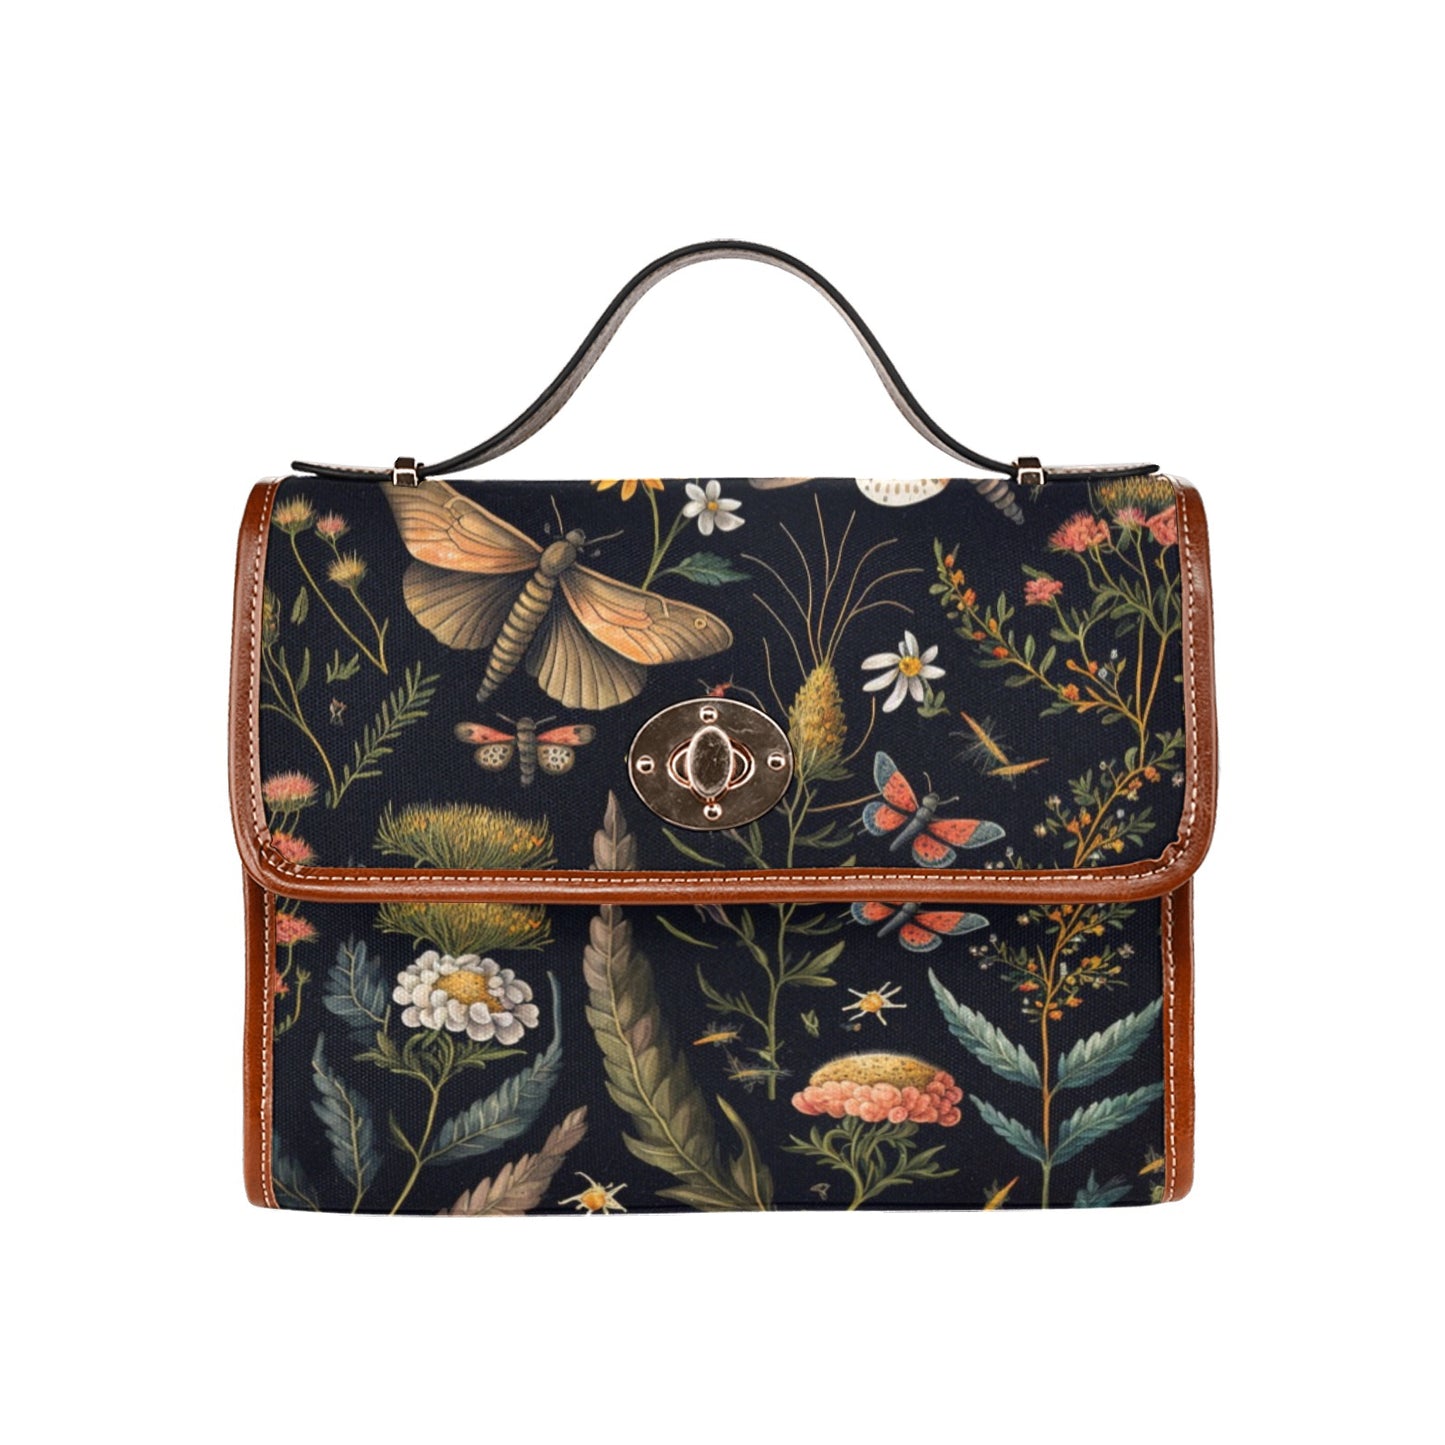 Botanical Moths Purse, Dragonflies Handbag, Cottagecore Canvas Satchel bag, Witchy Purse